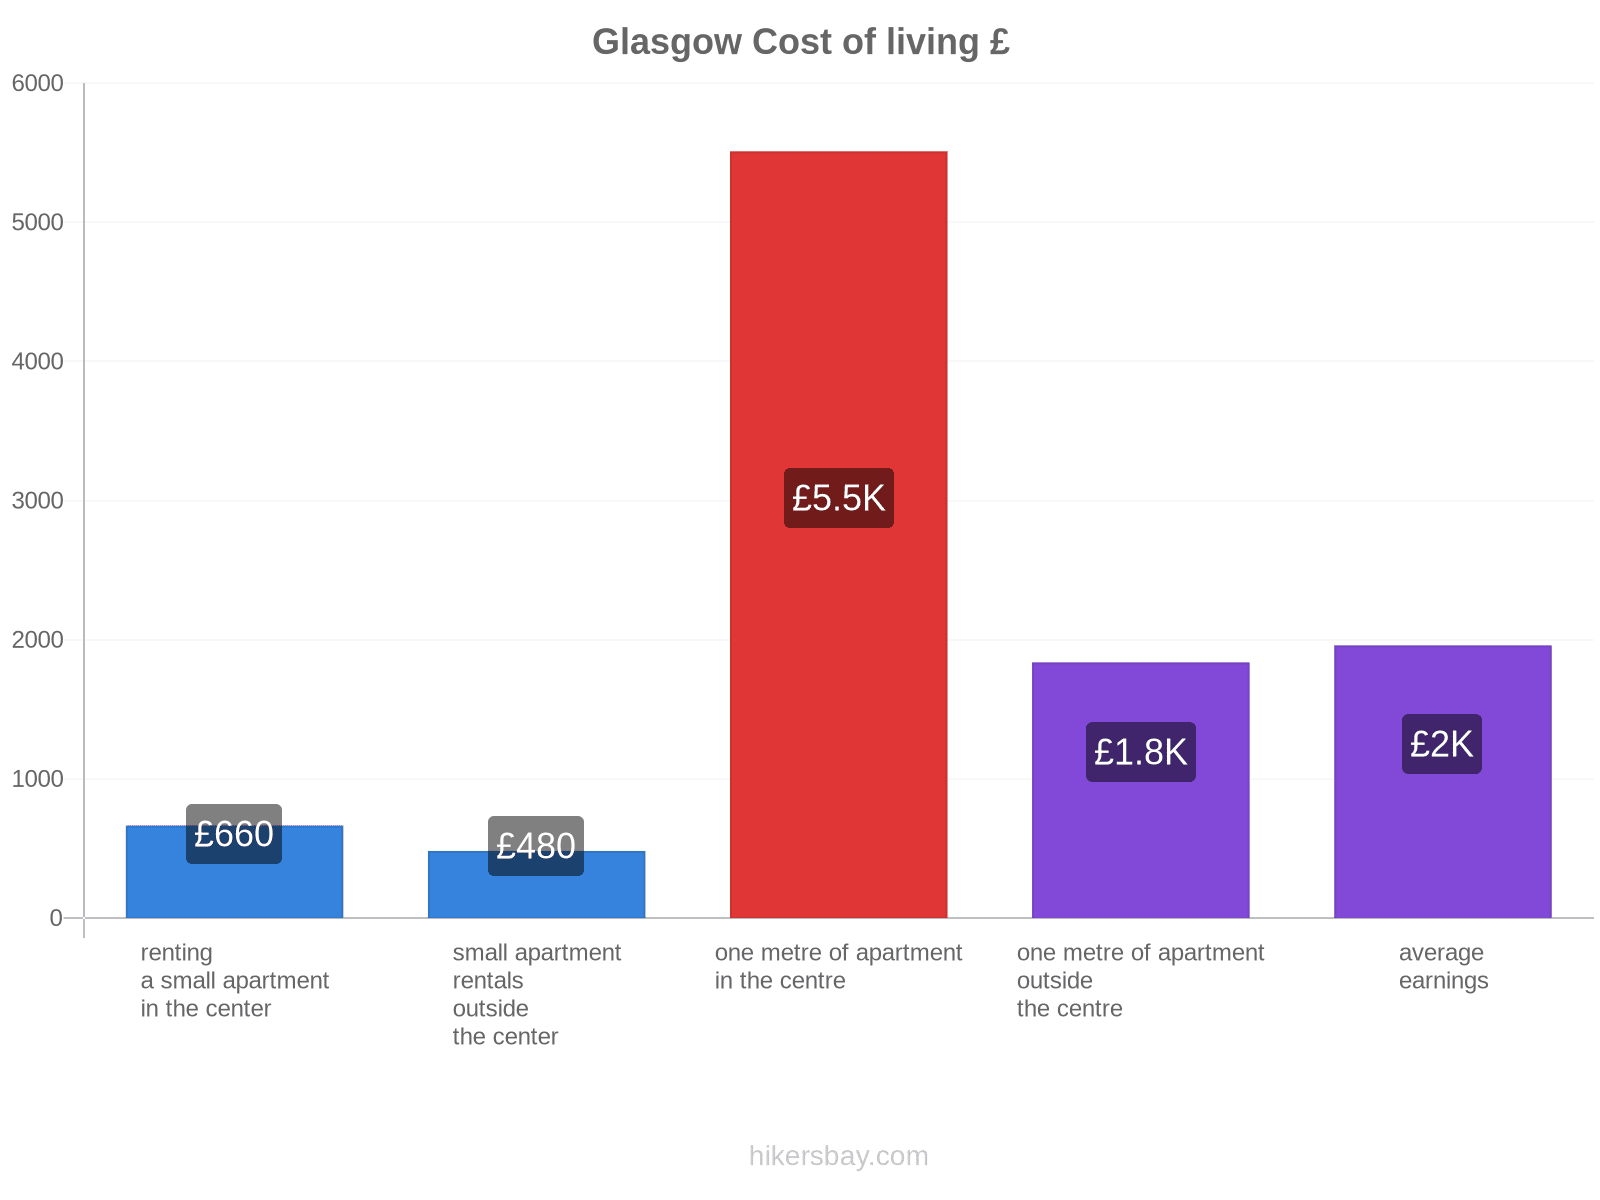 Glasgow cost of living hikersbay.com